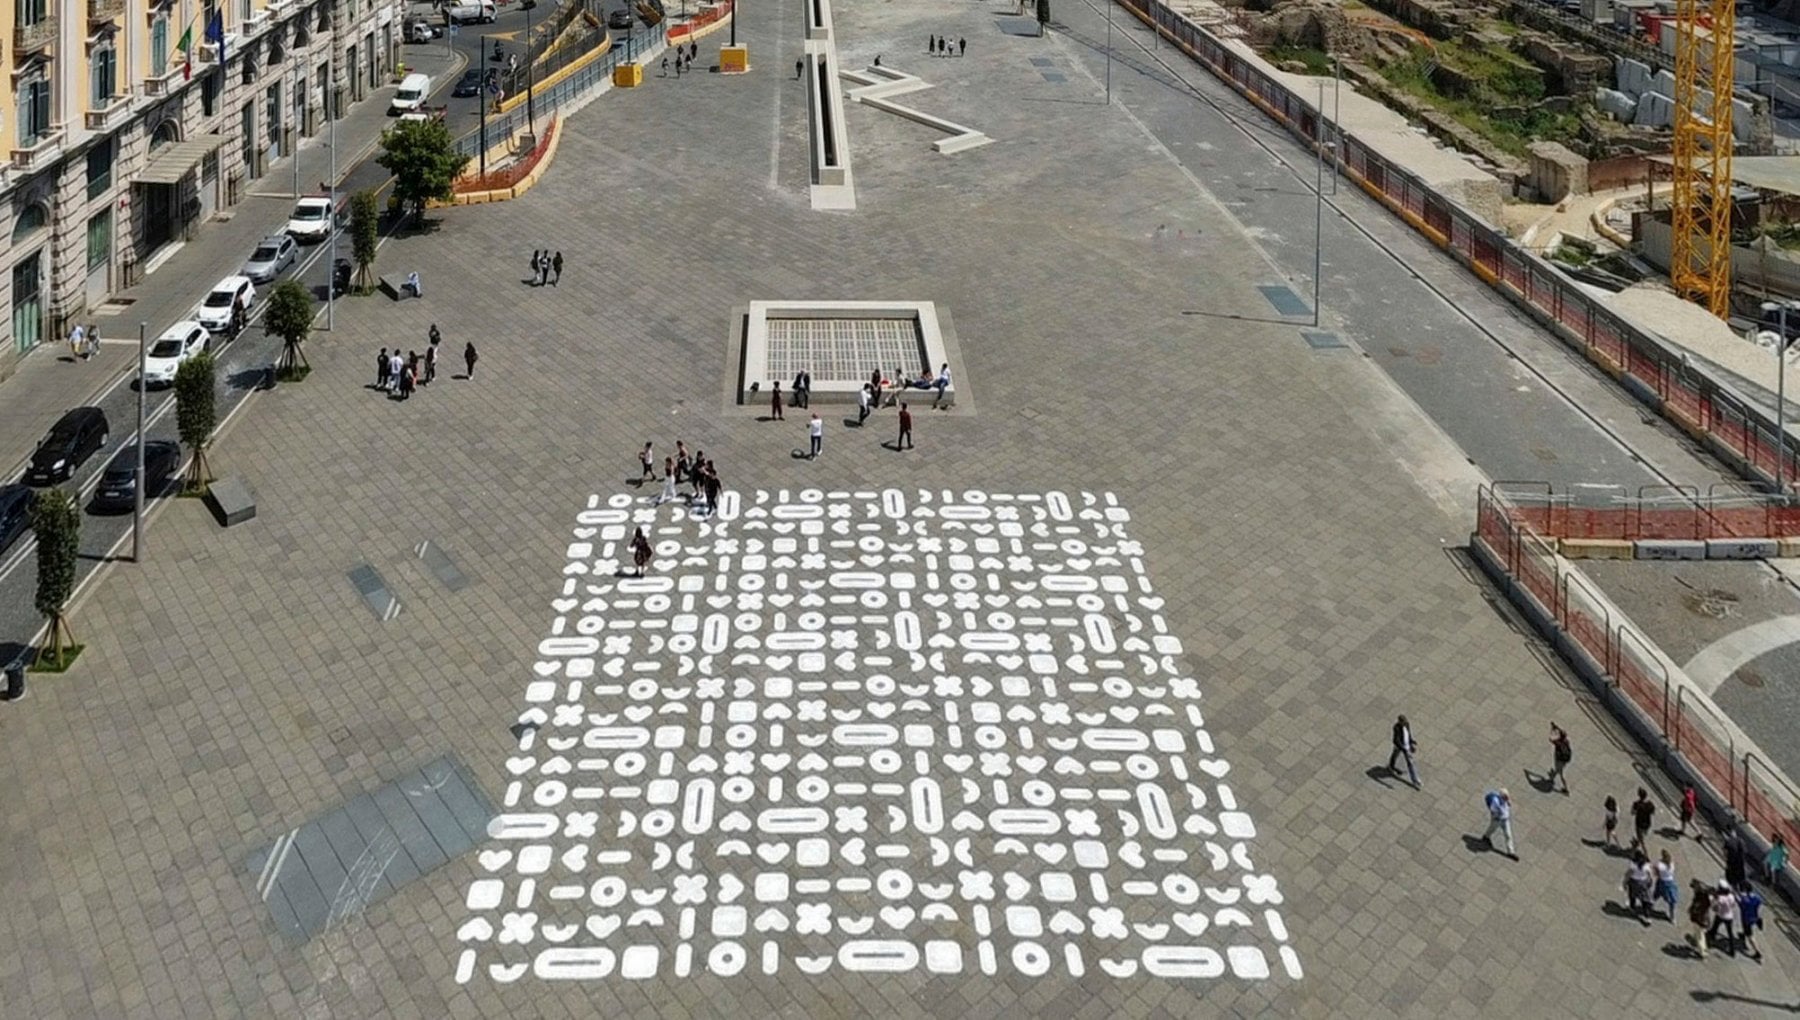 ミュニシピオ広場の落書き